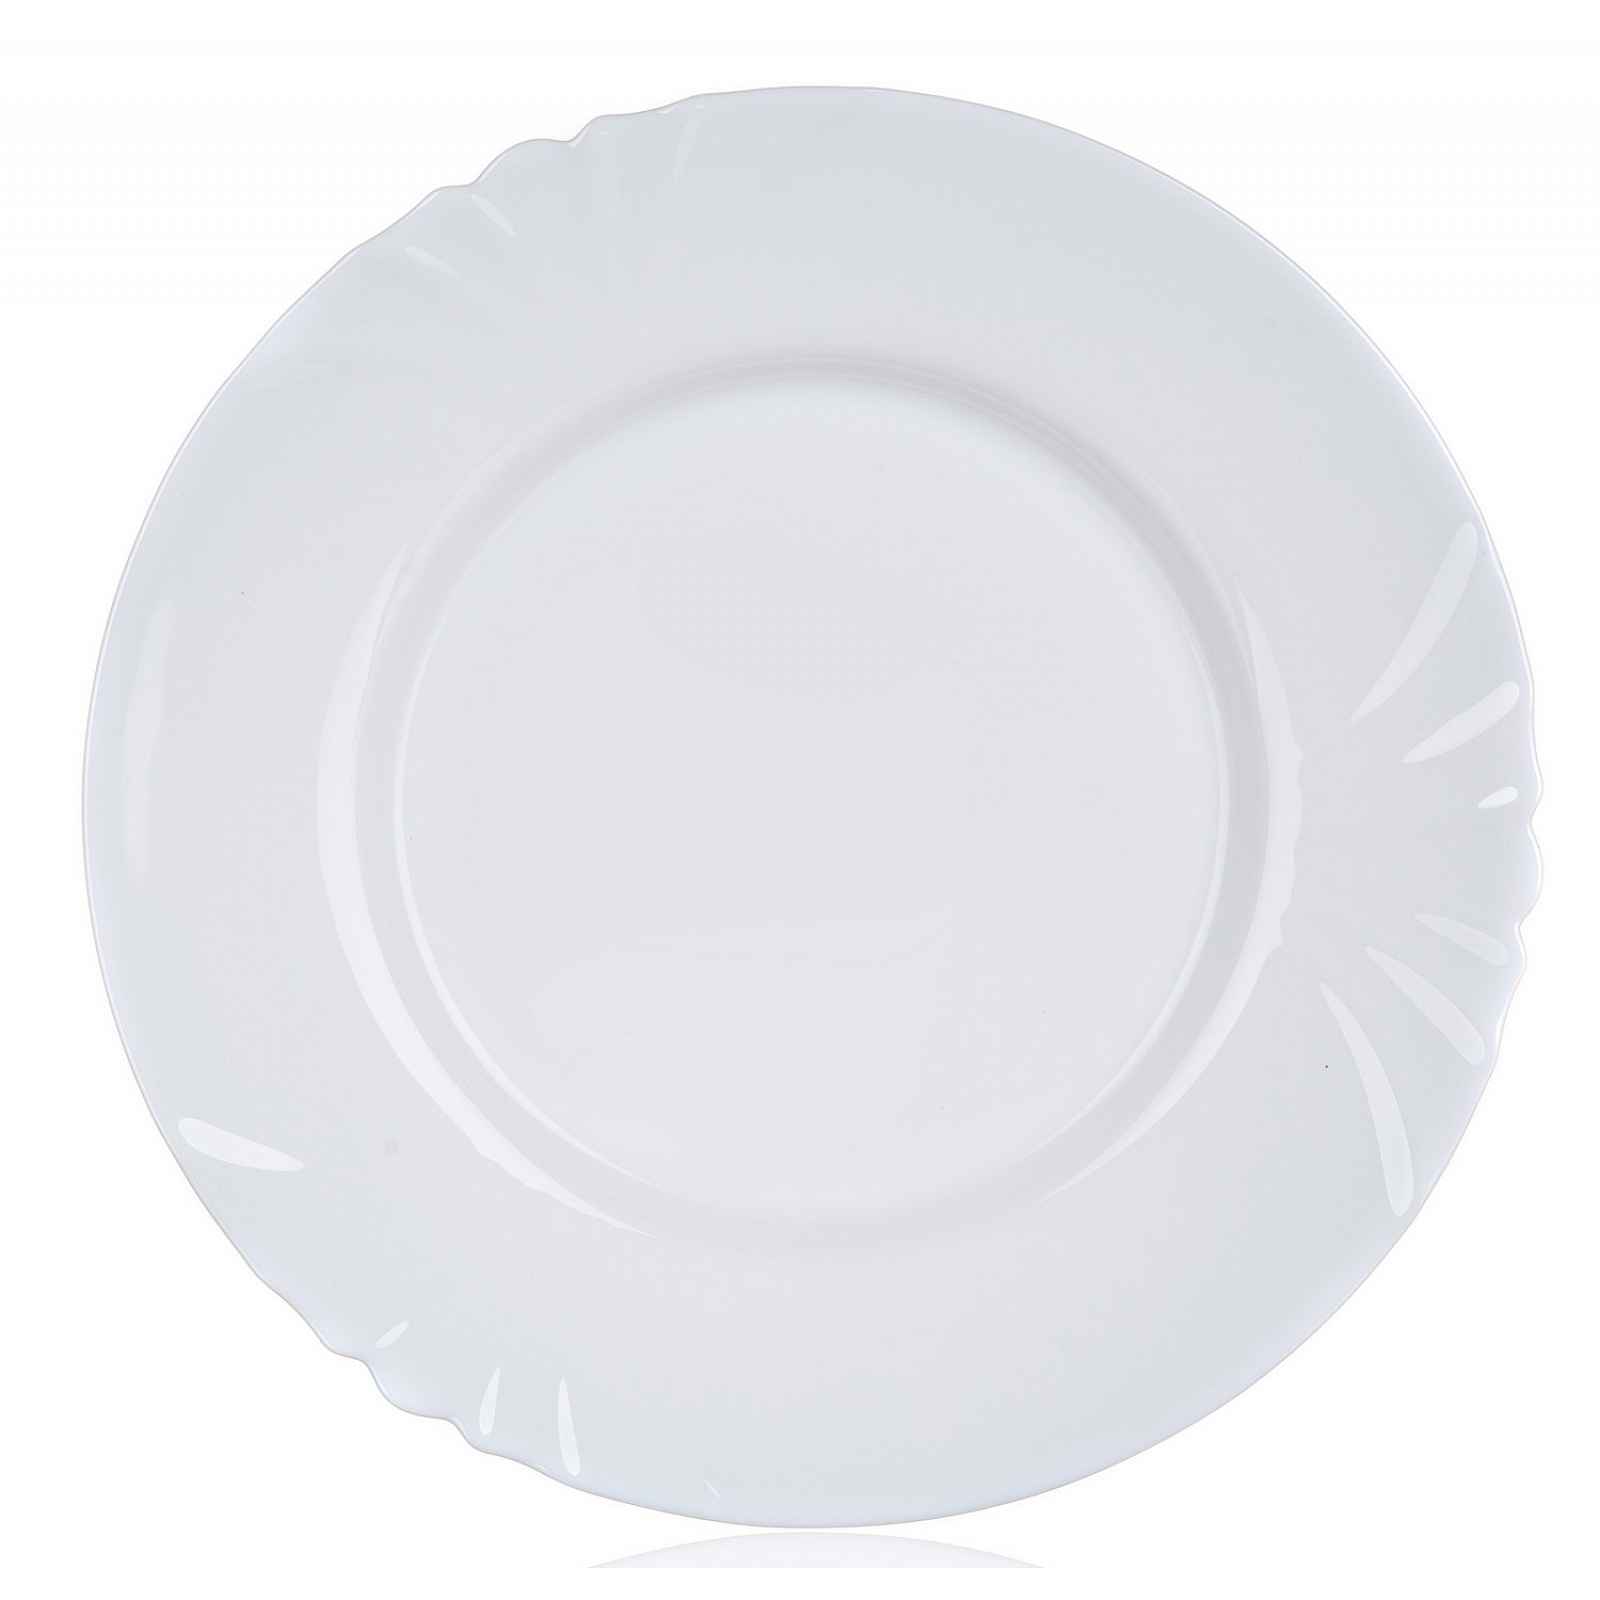 Mělký talíř Cadix 25 cm, bílý